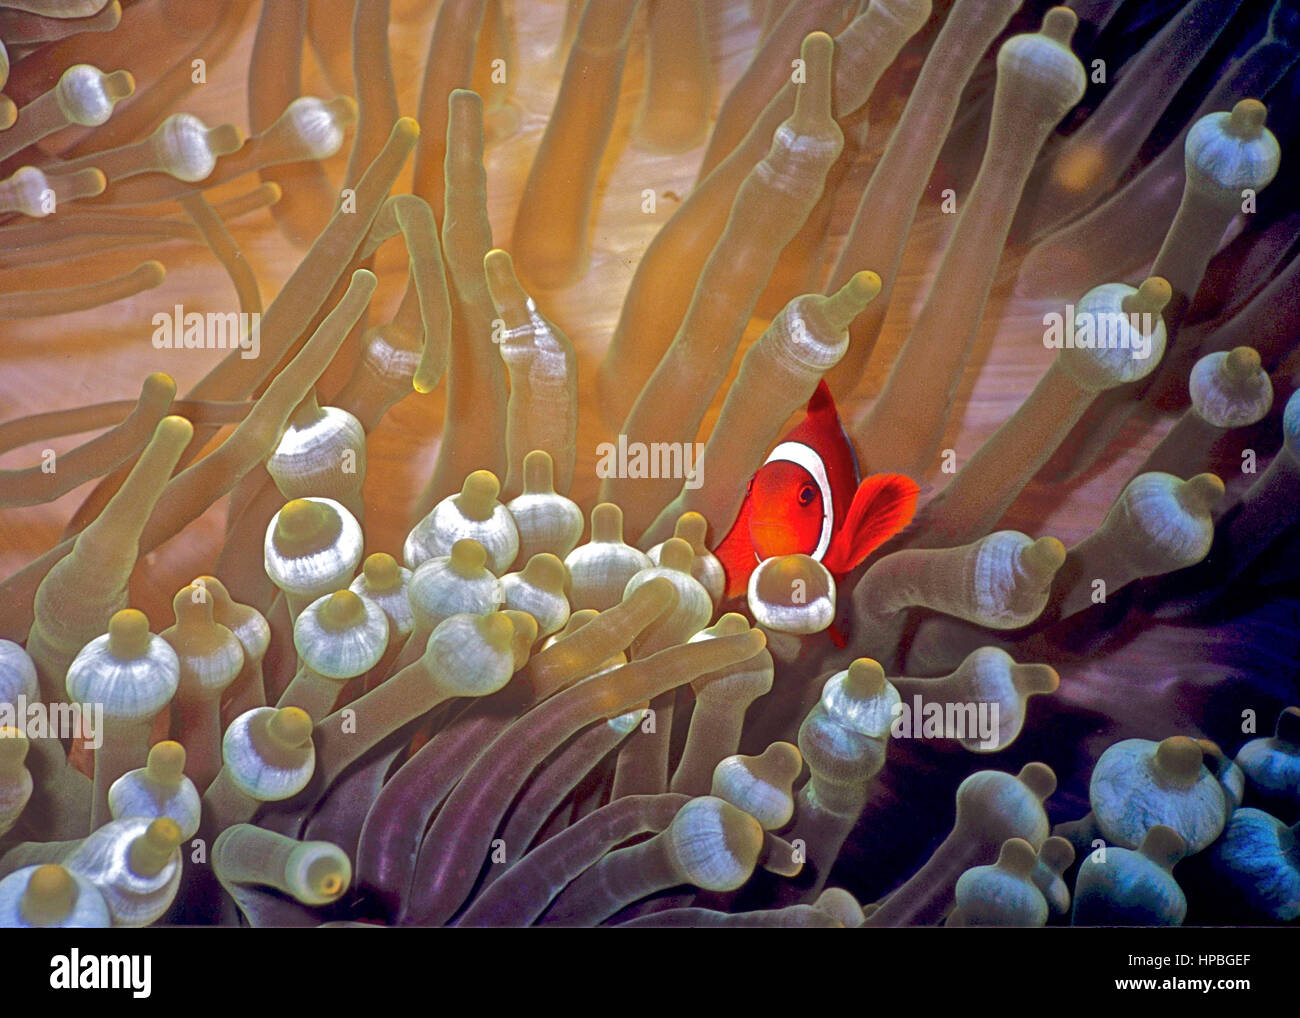 Un Amphiprion percula clownfish () dans sa bulle de l'hôte (l'anémone Entacmaea quadricolor) : un bon exemple d'une relation symbiotique. Bali, Indonésie. Banque D'Images